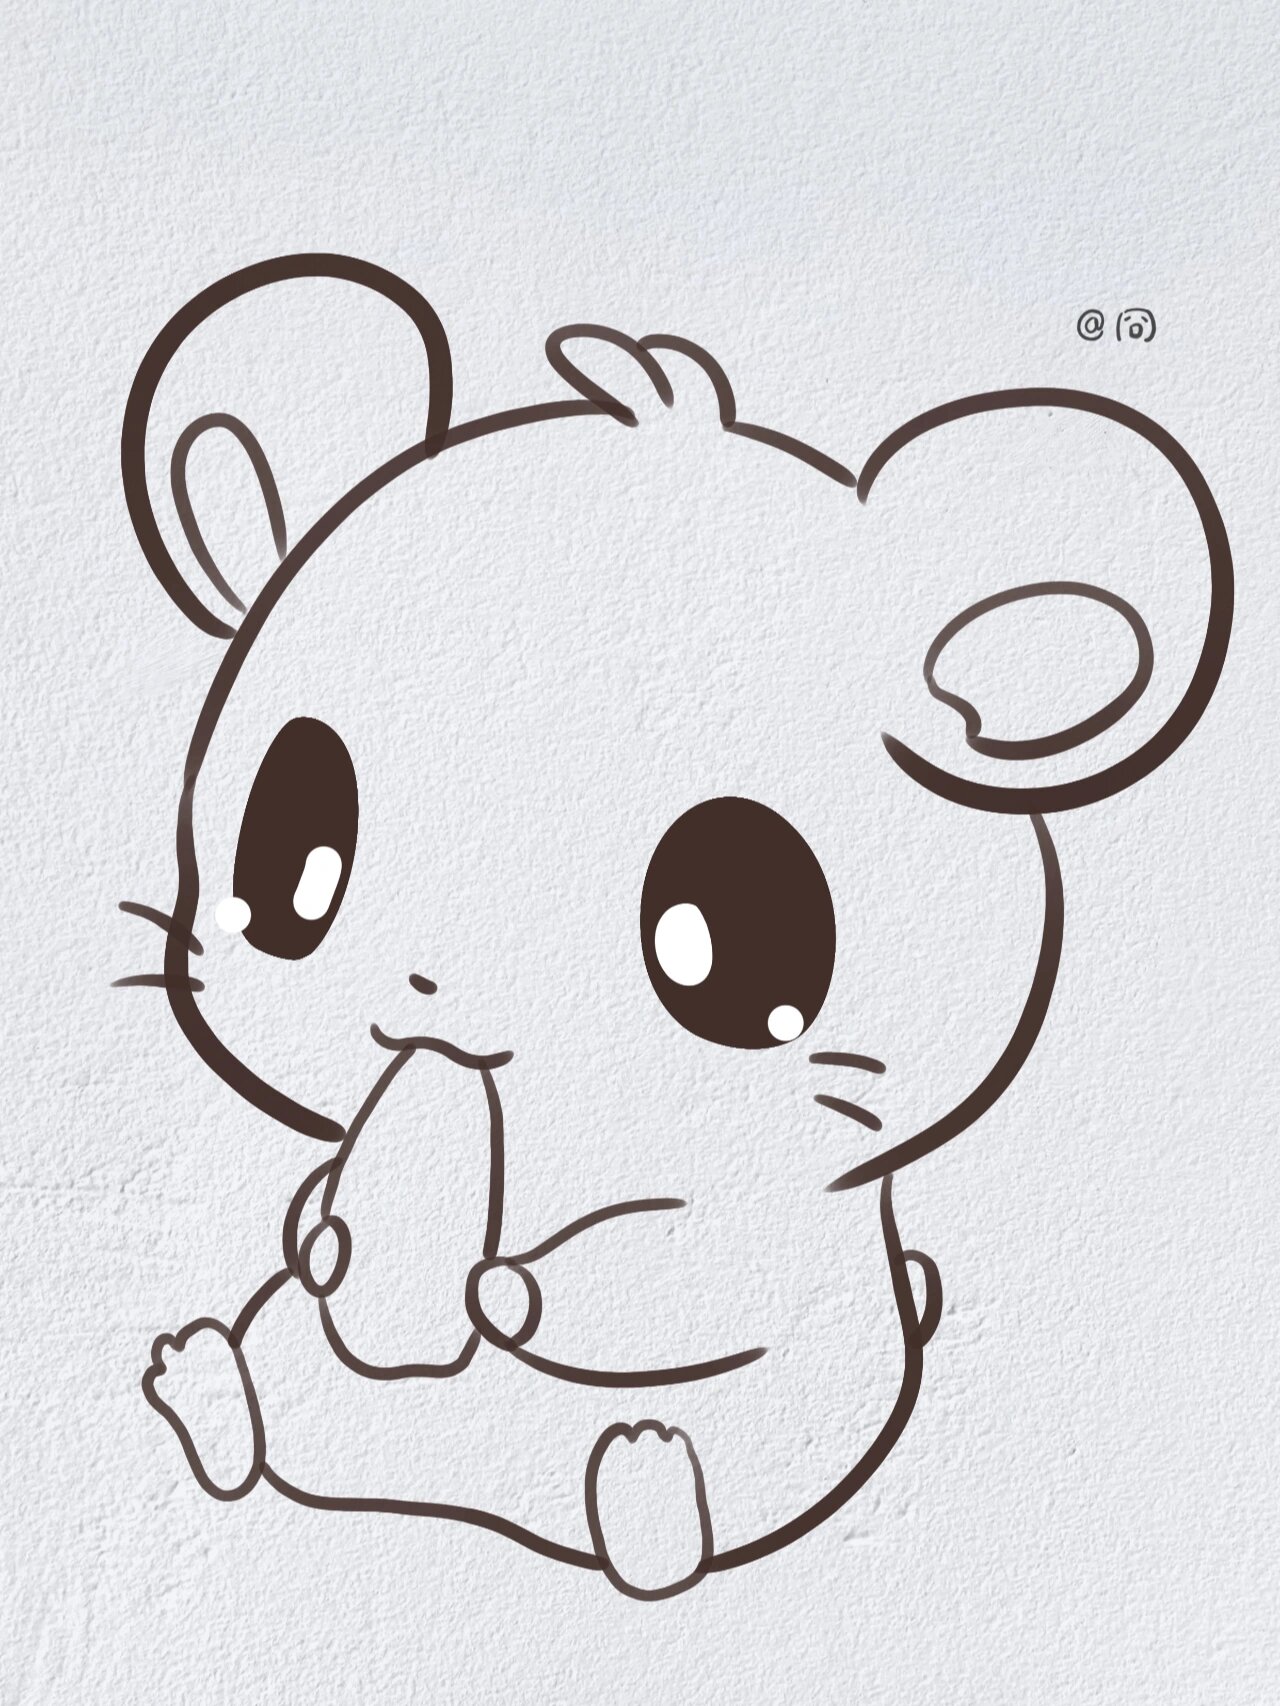 动物简笔画之可爱的小仓鼠(内附过程图)